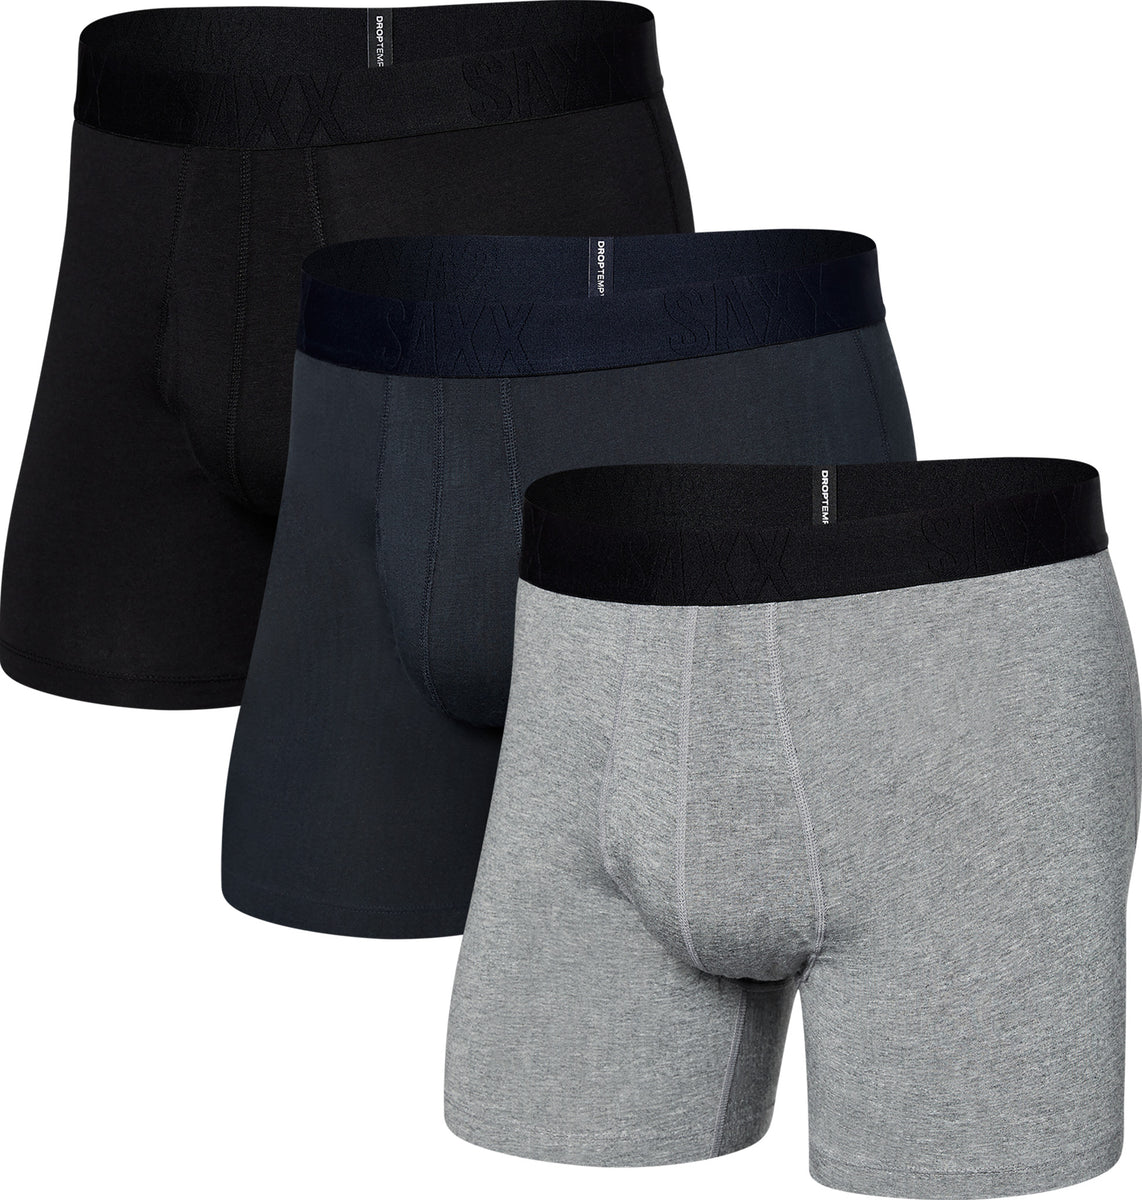 SAXX DropTemp Cooling Cotton 3-Pack Boxer Briefs - Men's | Altitude Sports